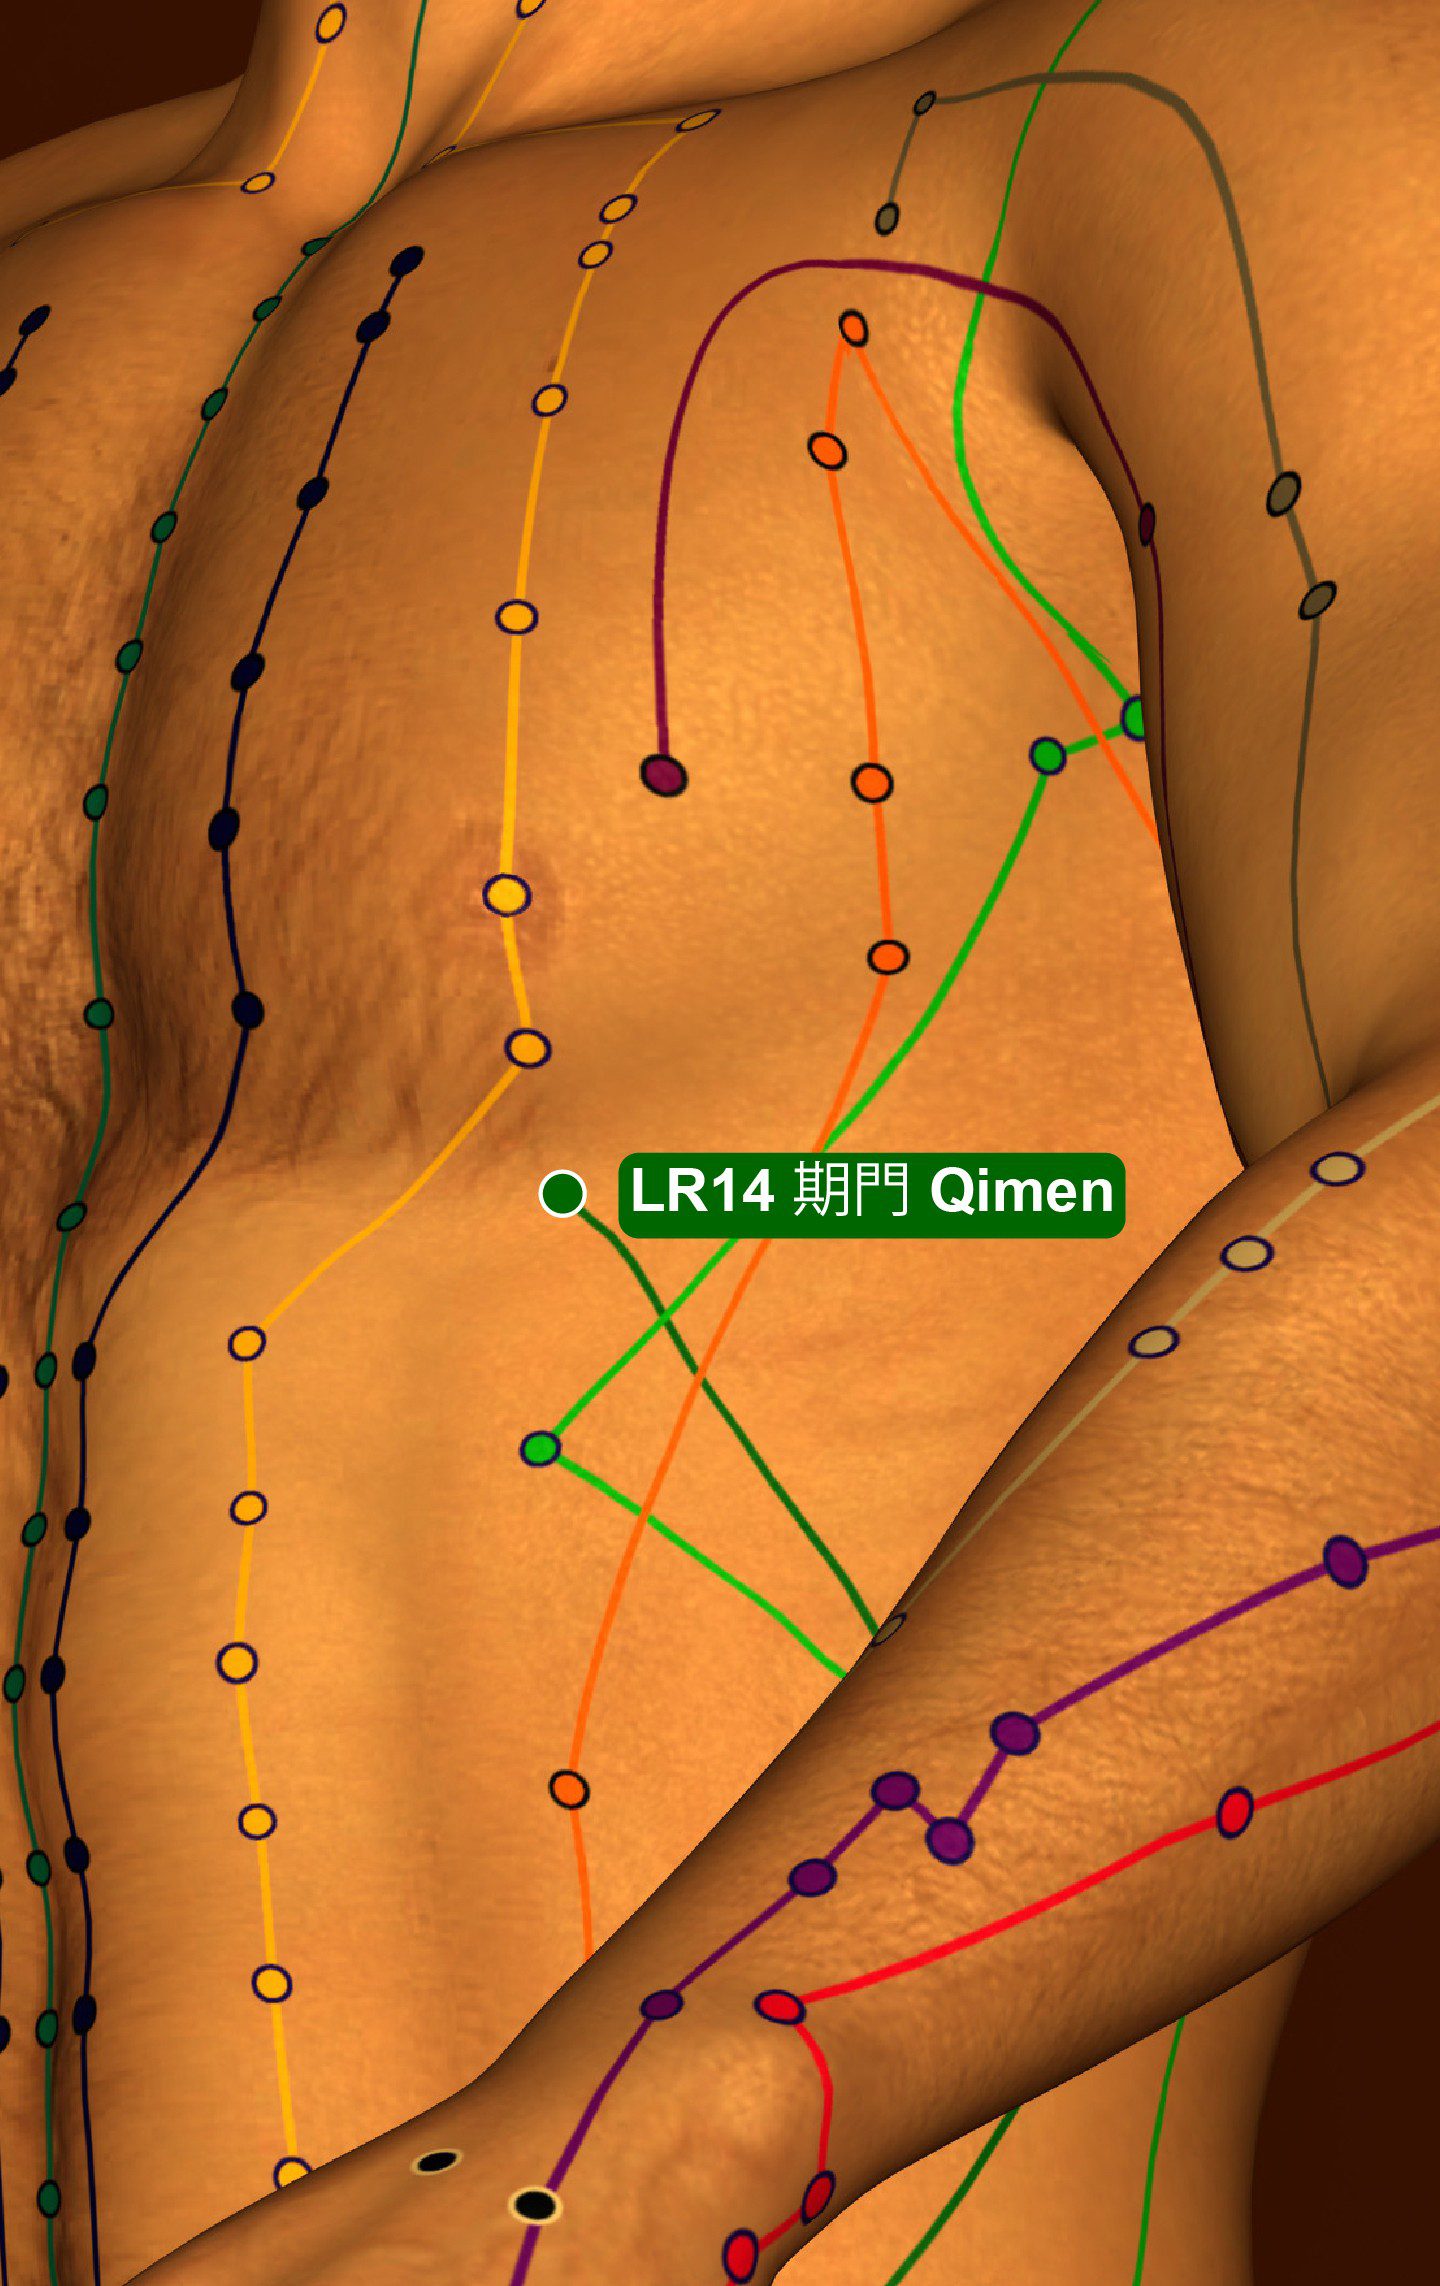 Acupuncture Point LR14 Qimen